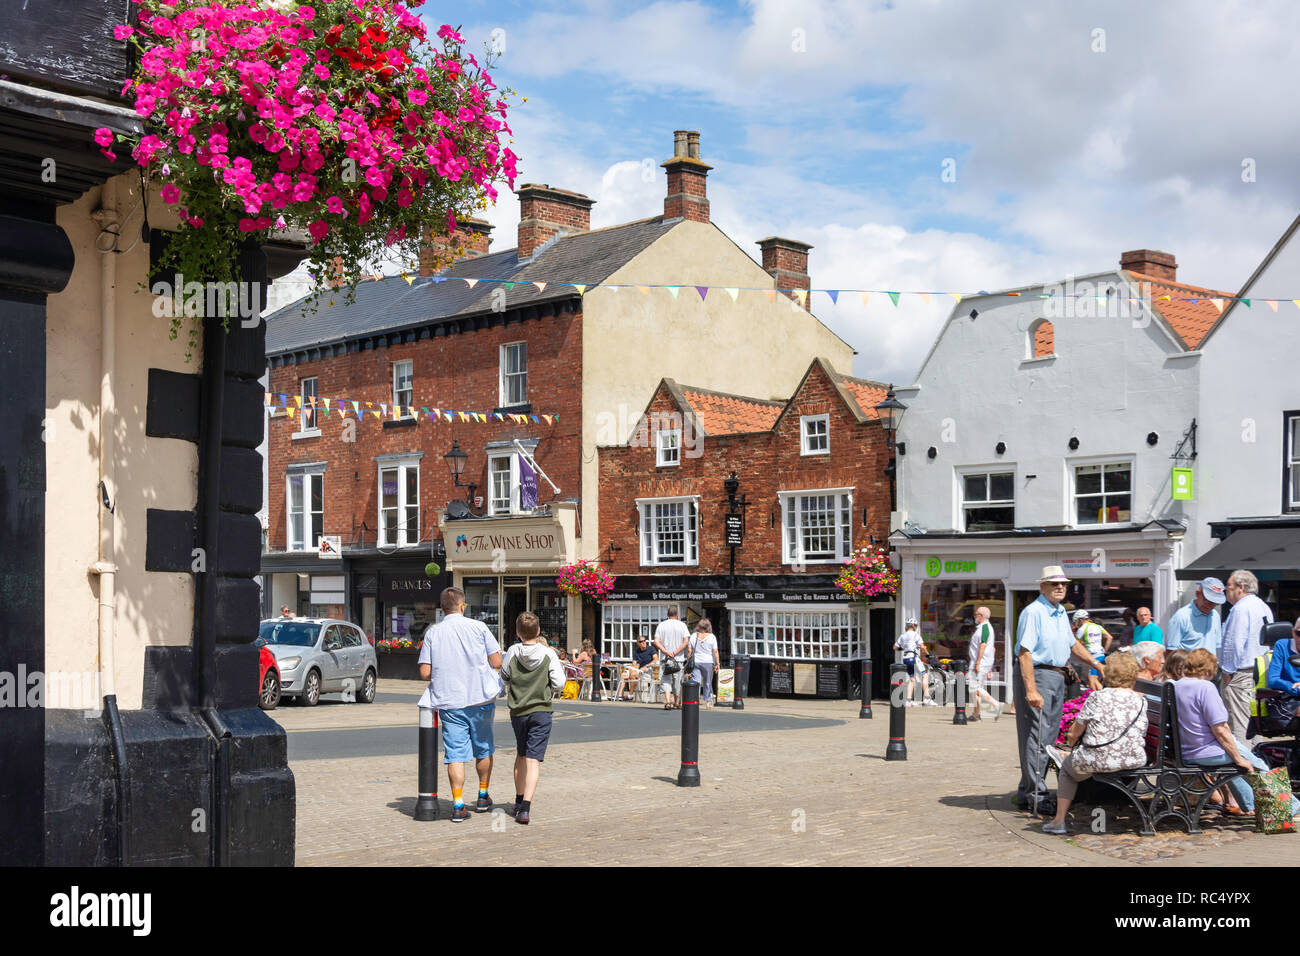 Market Place, Knaresborough, North Yorkshire, England, United Kingdom Stock Photo